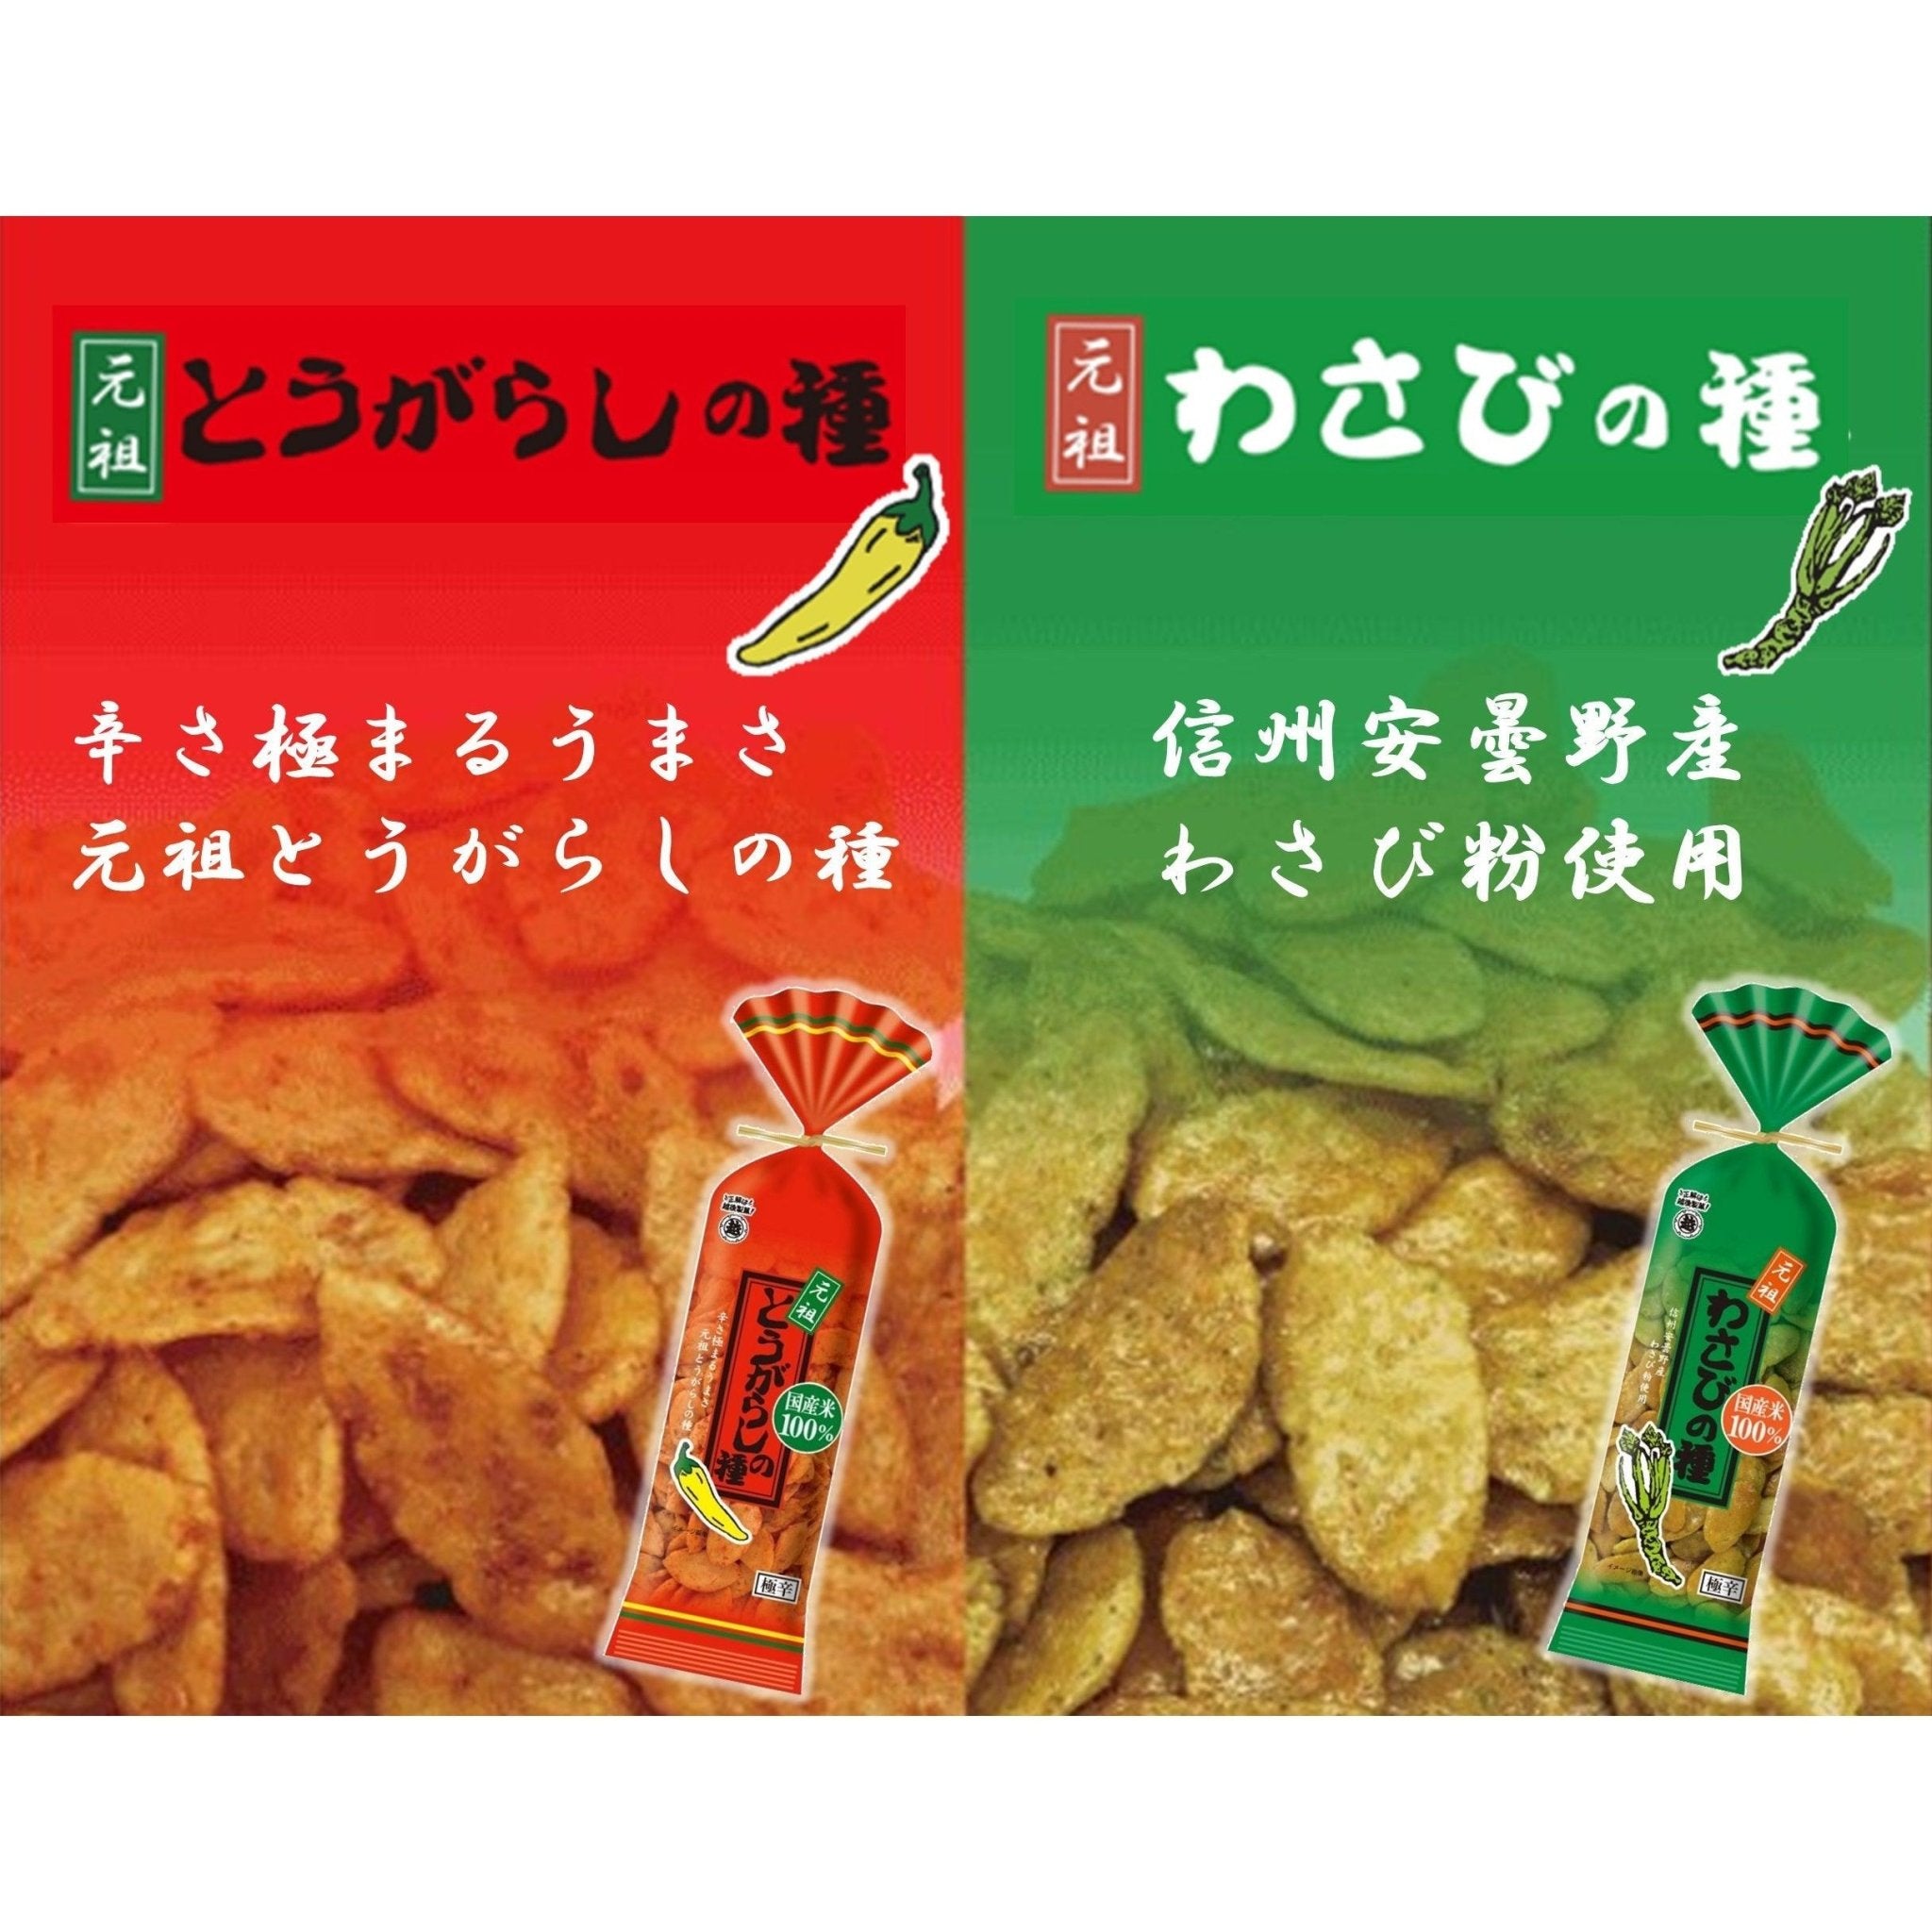 Echigo Seika Togarashi no Tane Spicy Hot Rice Crackers 80g (Pack of 5) - YOYO JAPAN